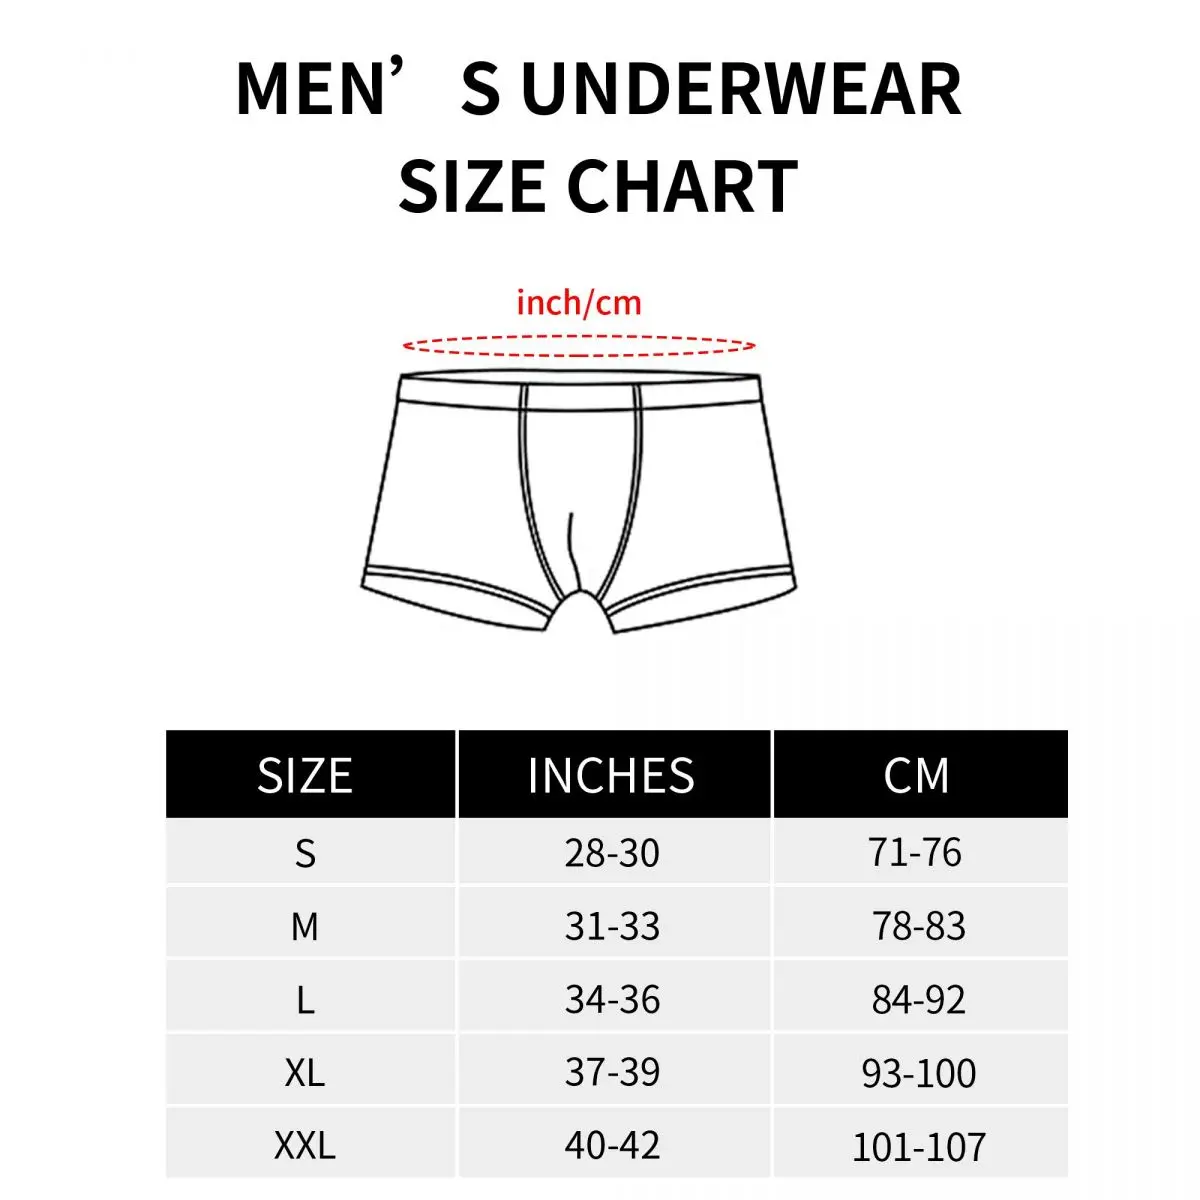 Levi's shorts size 33